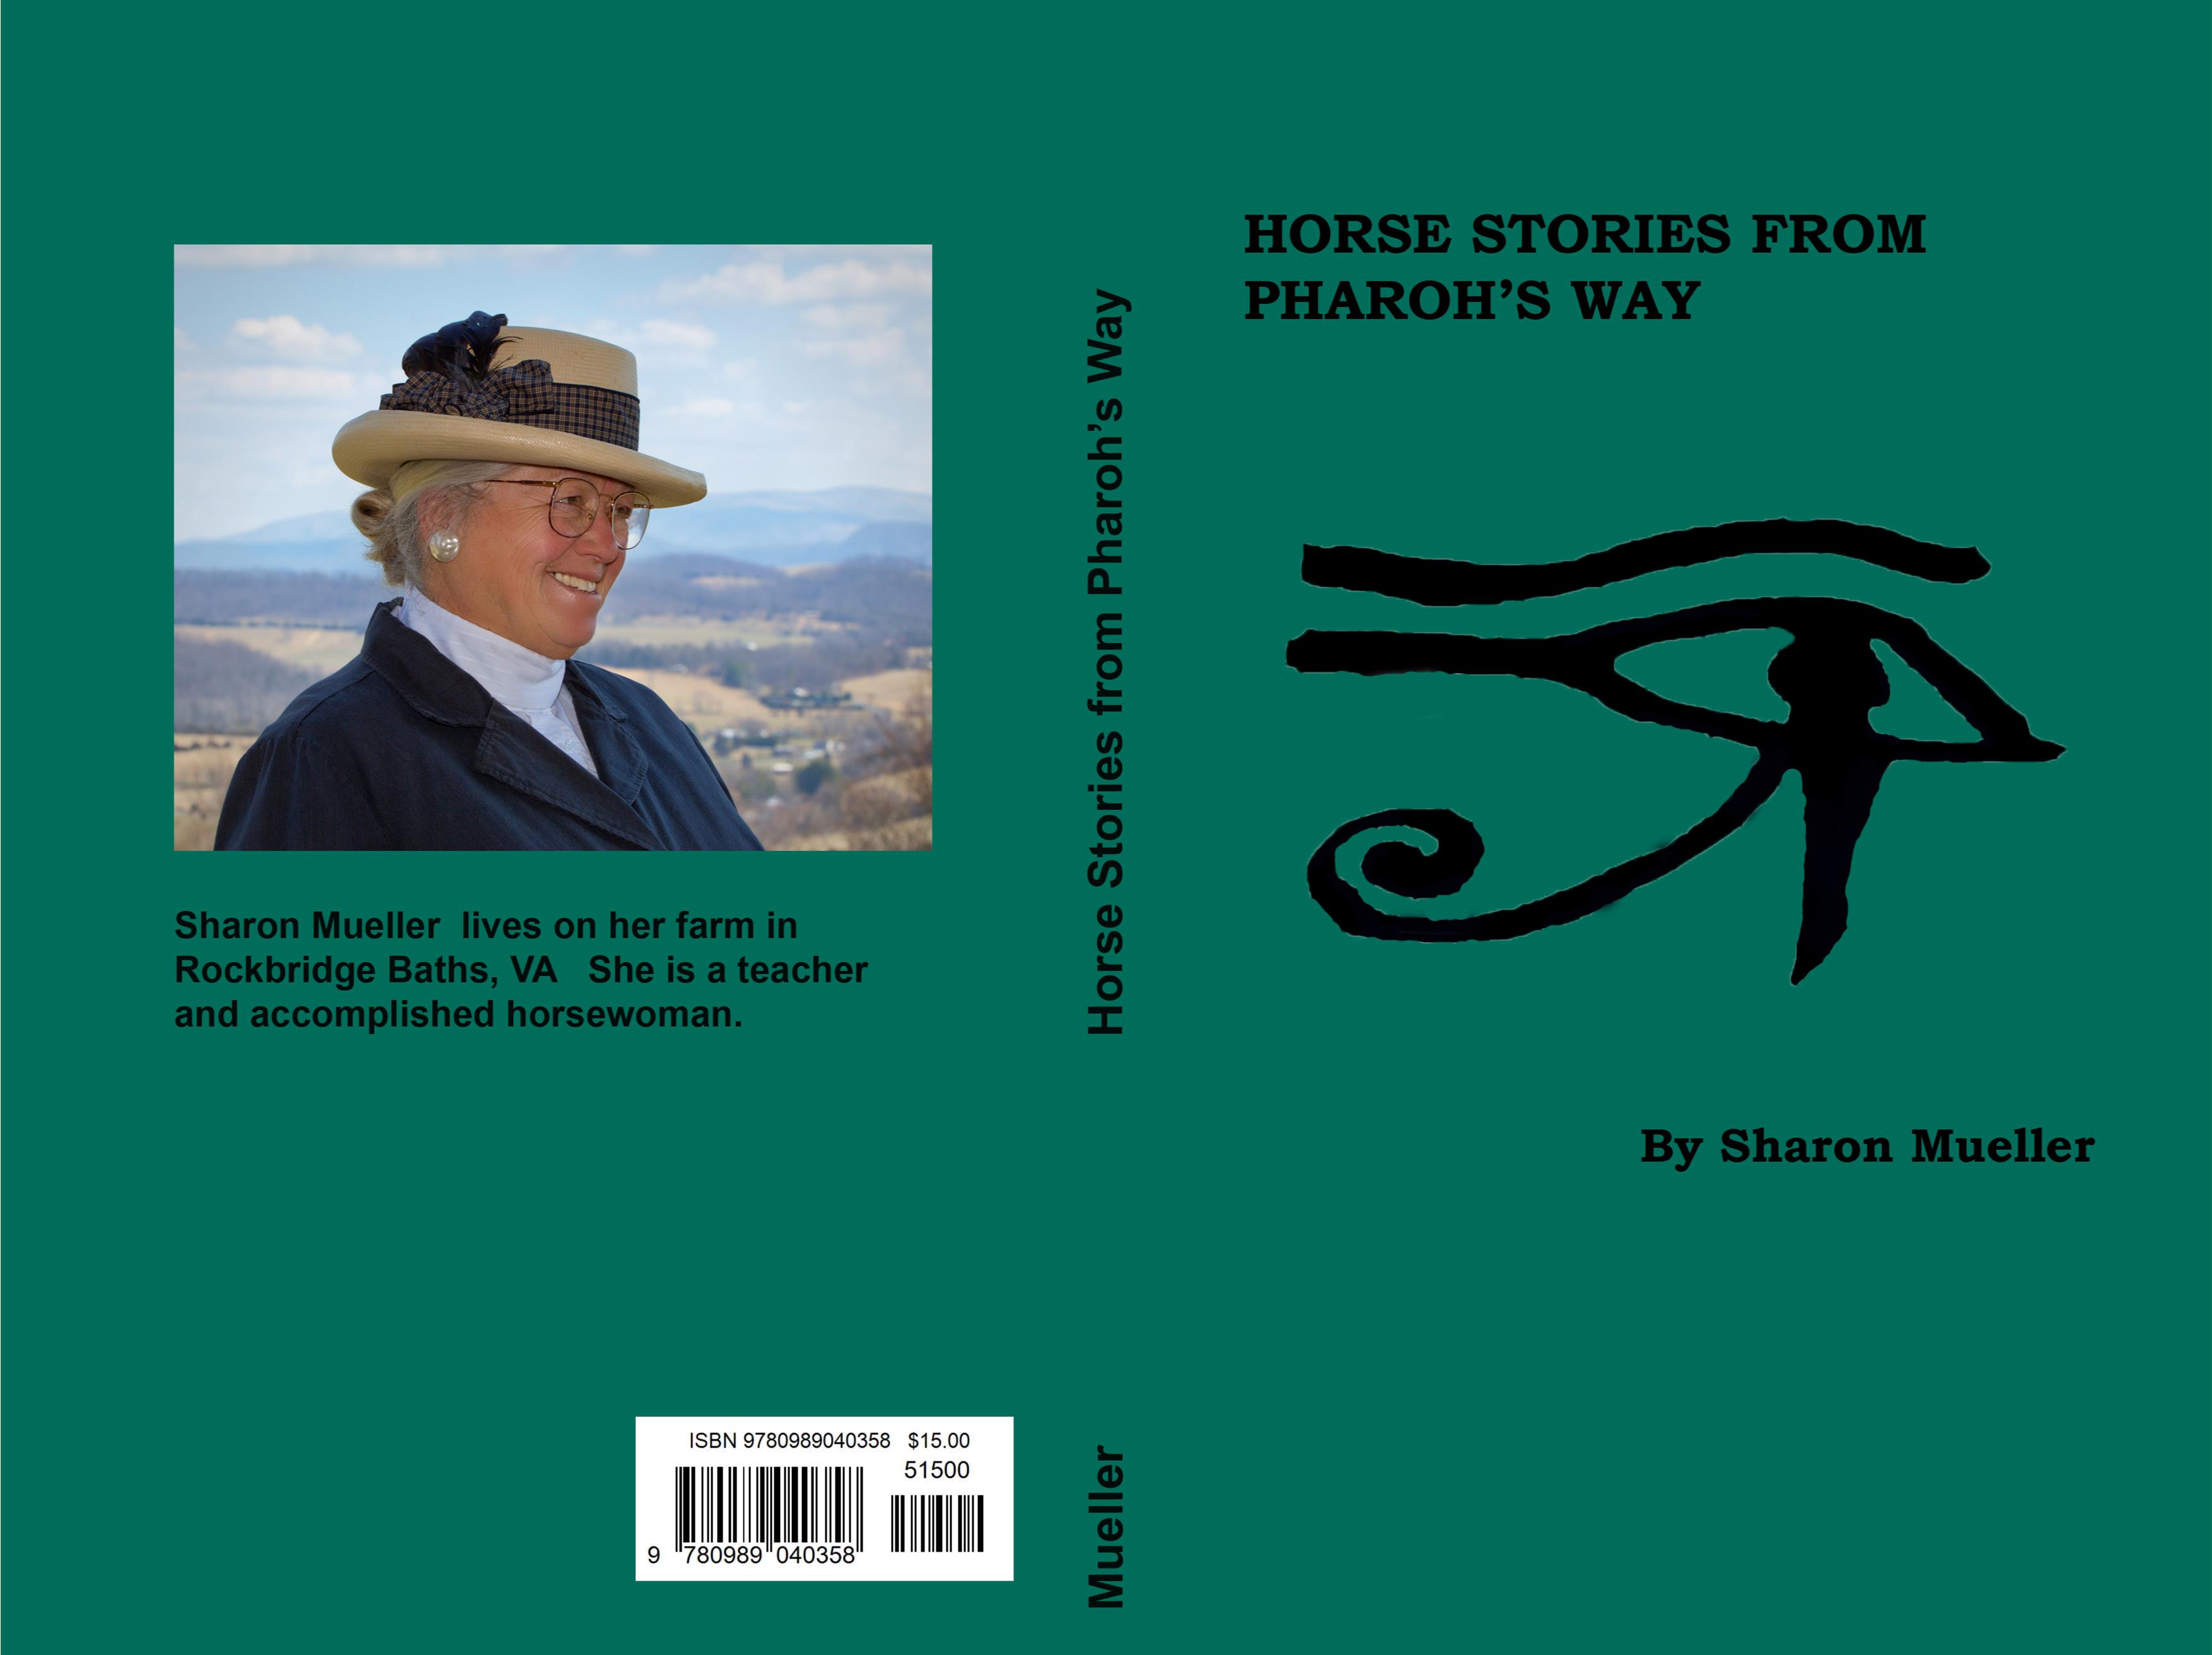 Horse stories from Pharoh